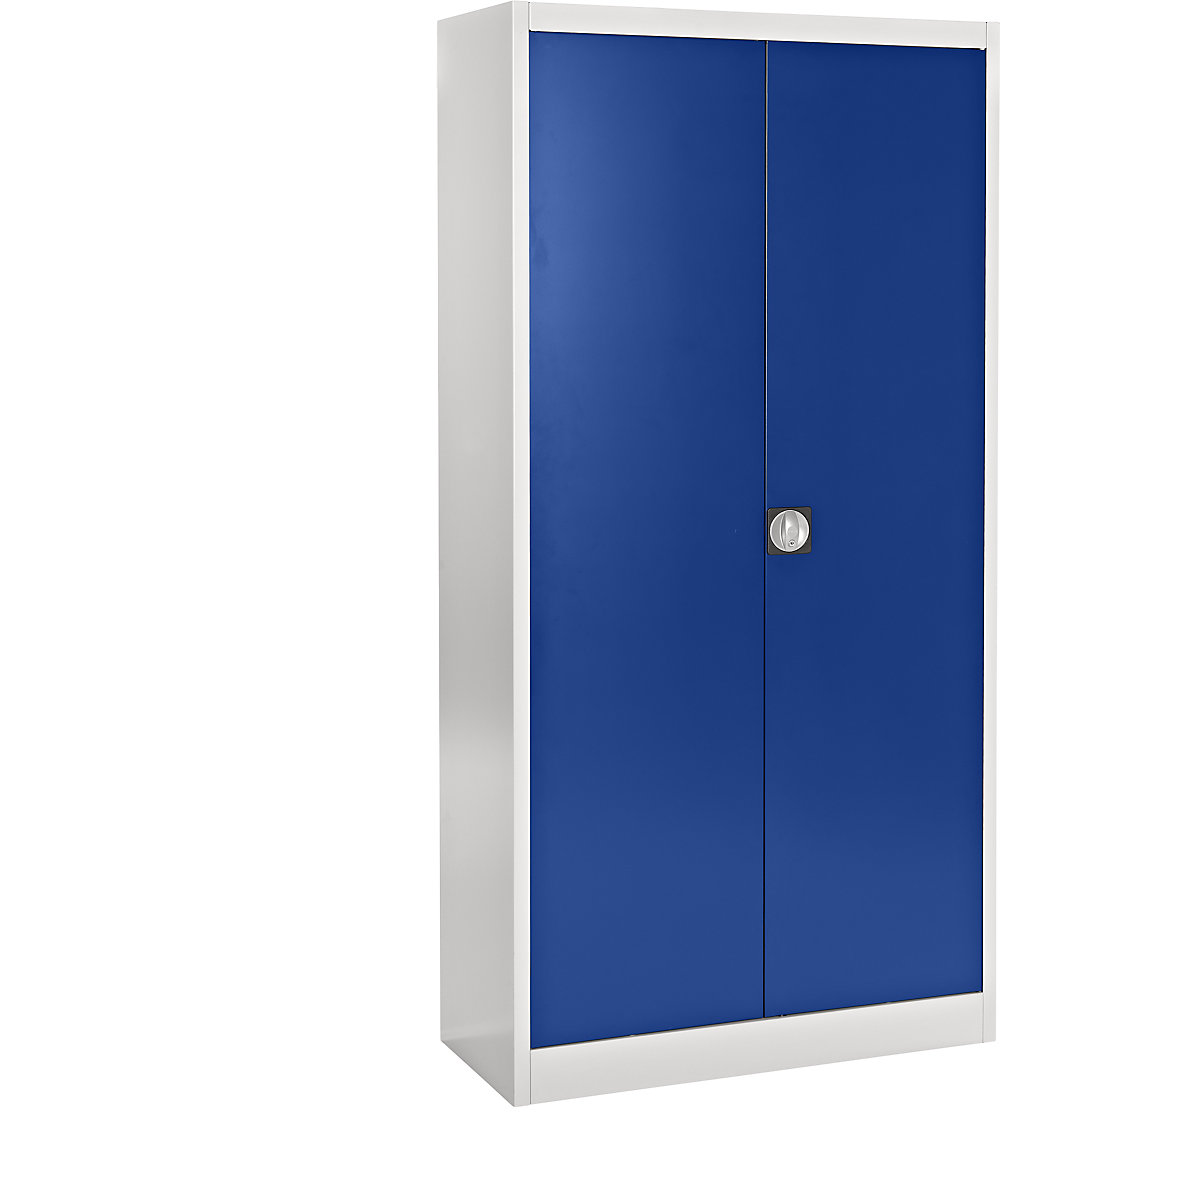 Jeklena omara z zgibnimi vrati – mauser, 4 police, globina 420 mm, svetlo siva / ultramarin modra-8